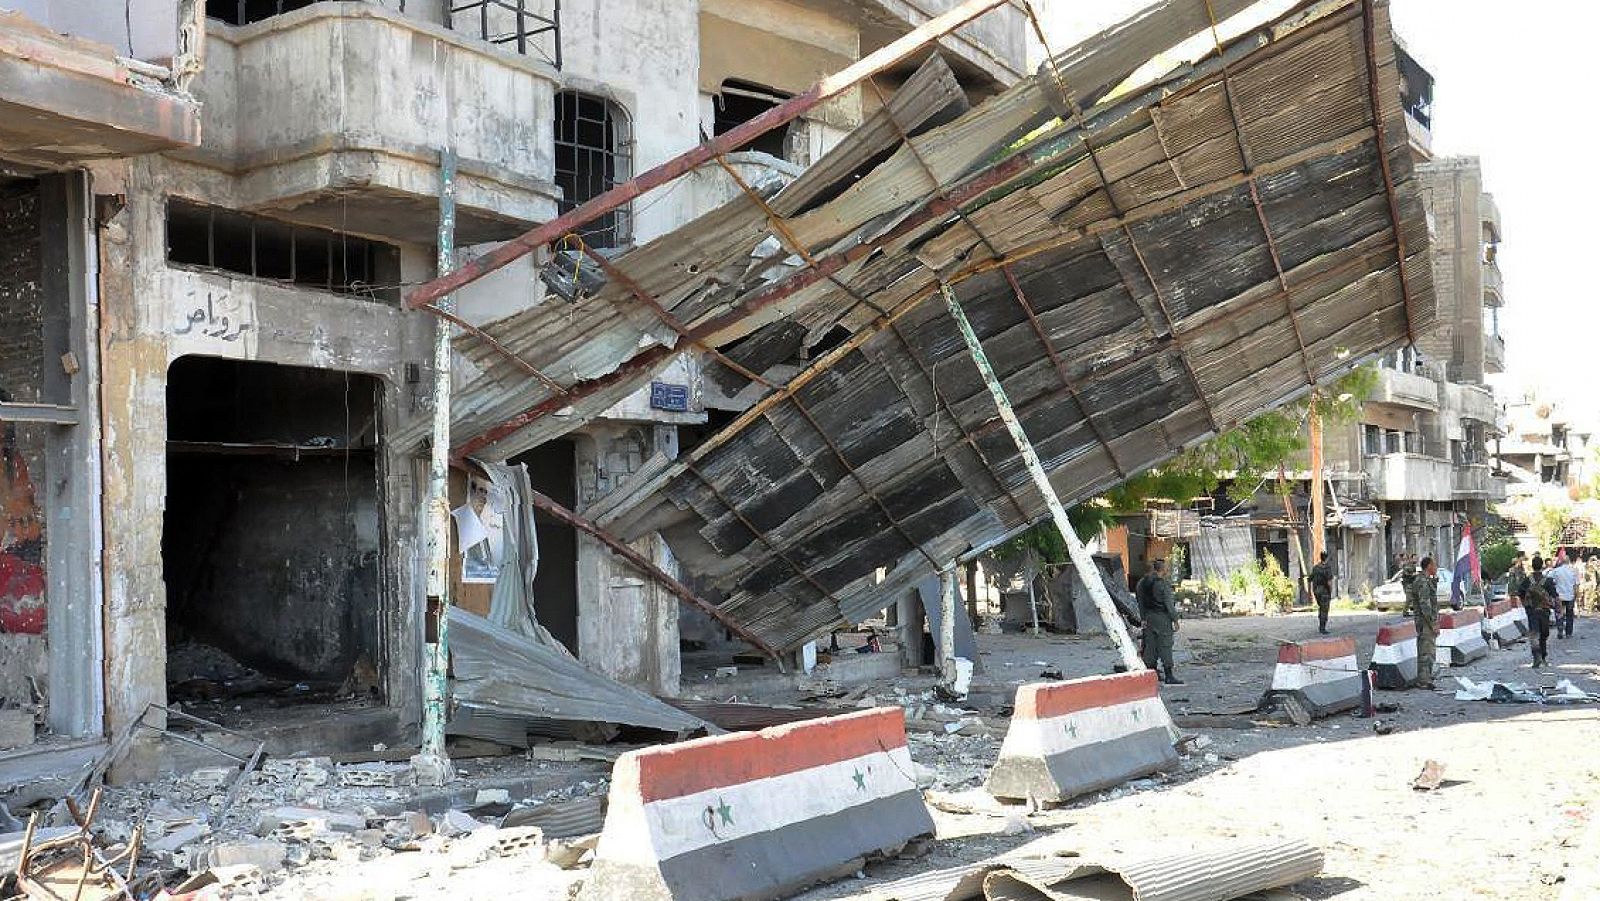 Imagen, difundida por la agencia oficial siria SANA el 5 de septiembre, que supuestamente muestra el daño causado por la explosión de un coche bomba en Homs.